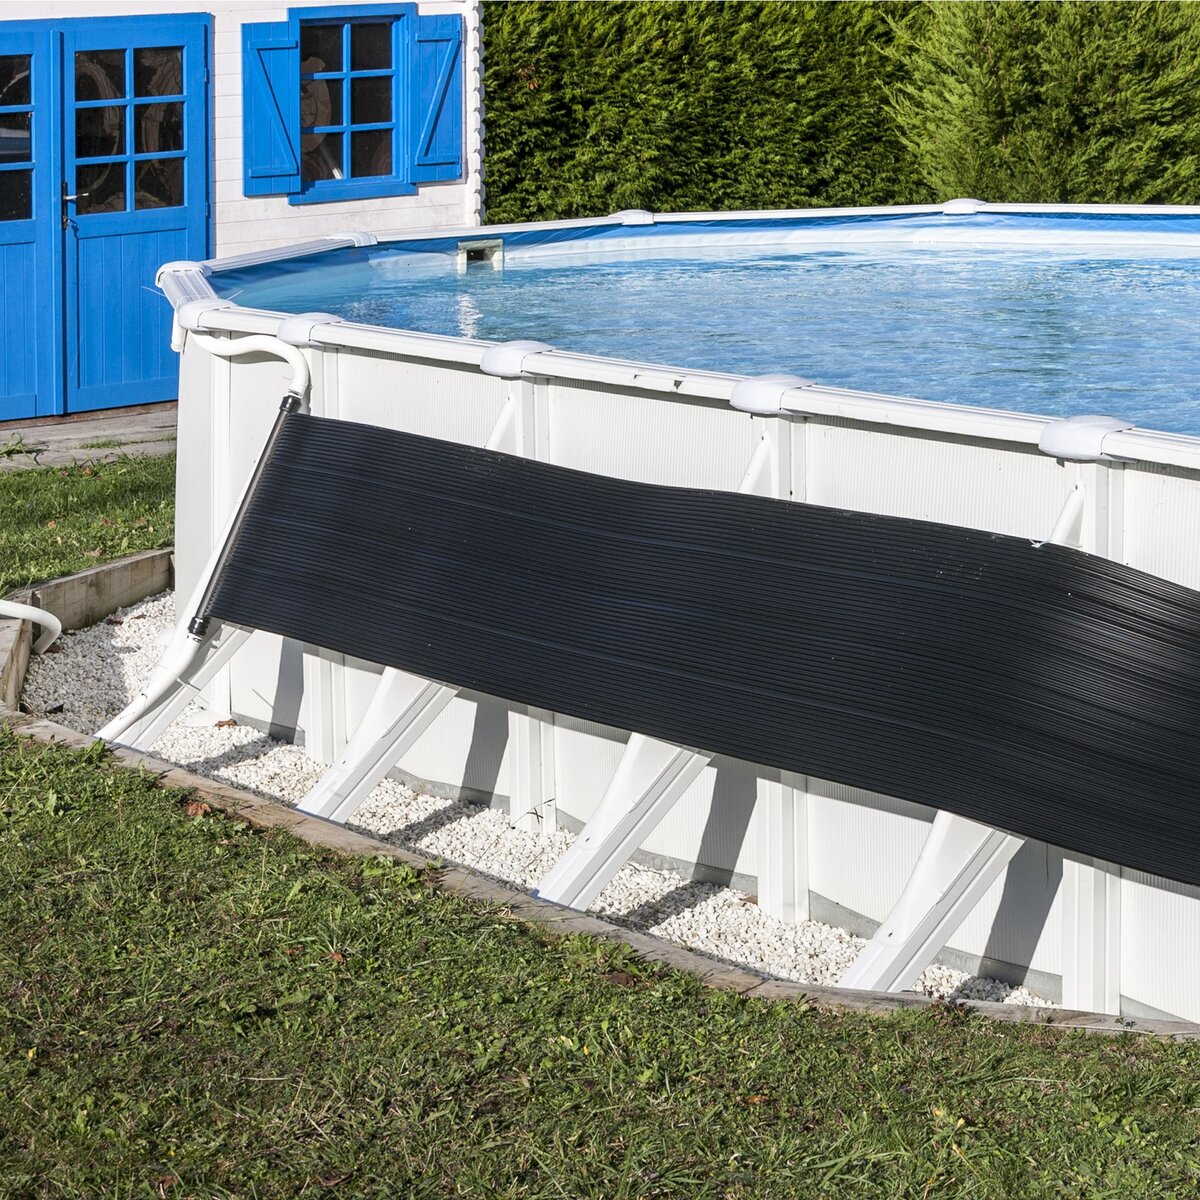 GRE Chauffage solaire pour piscine - 600x60cm